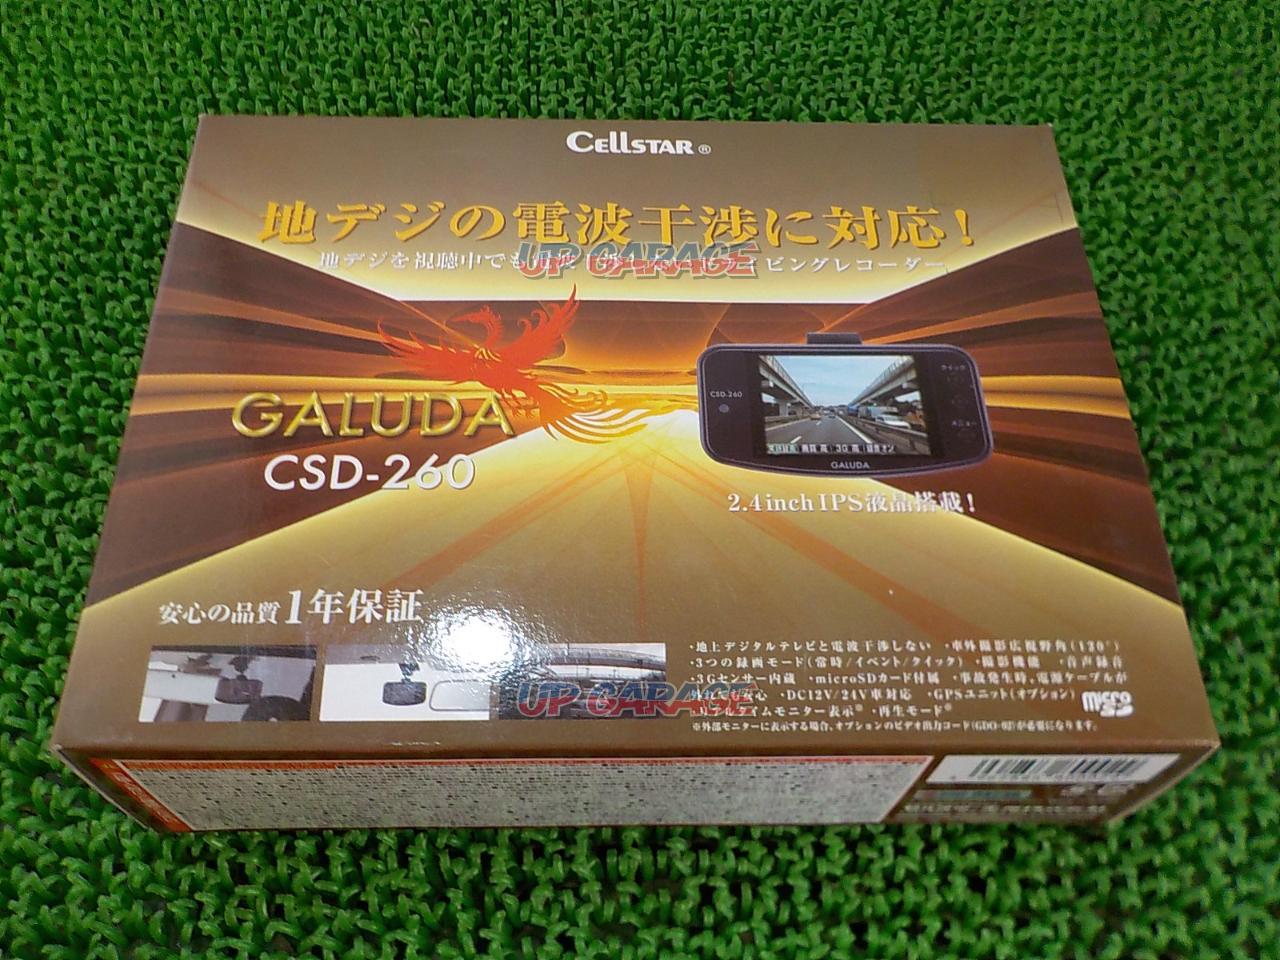 Cellstar Csd 260買取実績 ドライブレコーダーの買取はアップガレージ